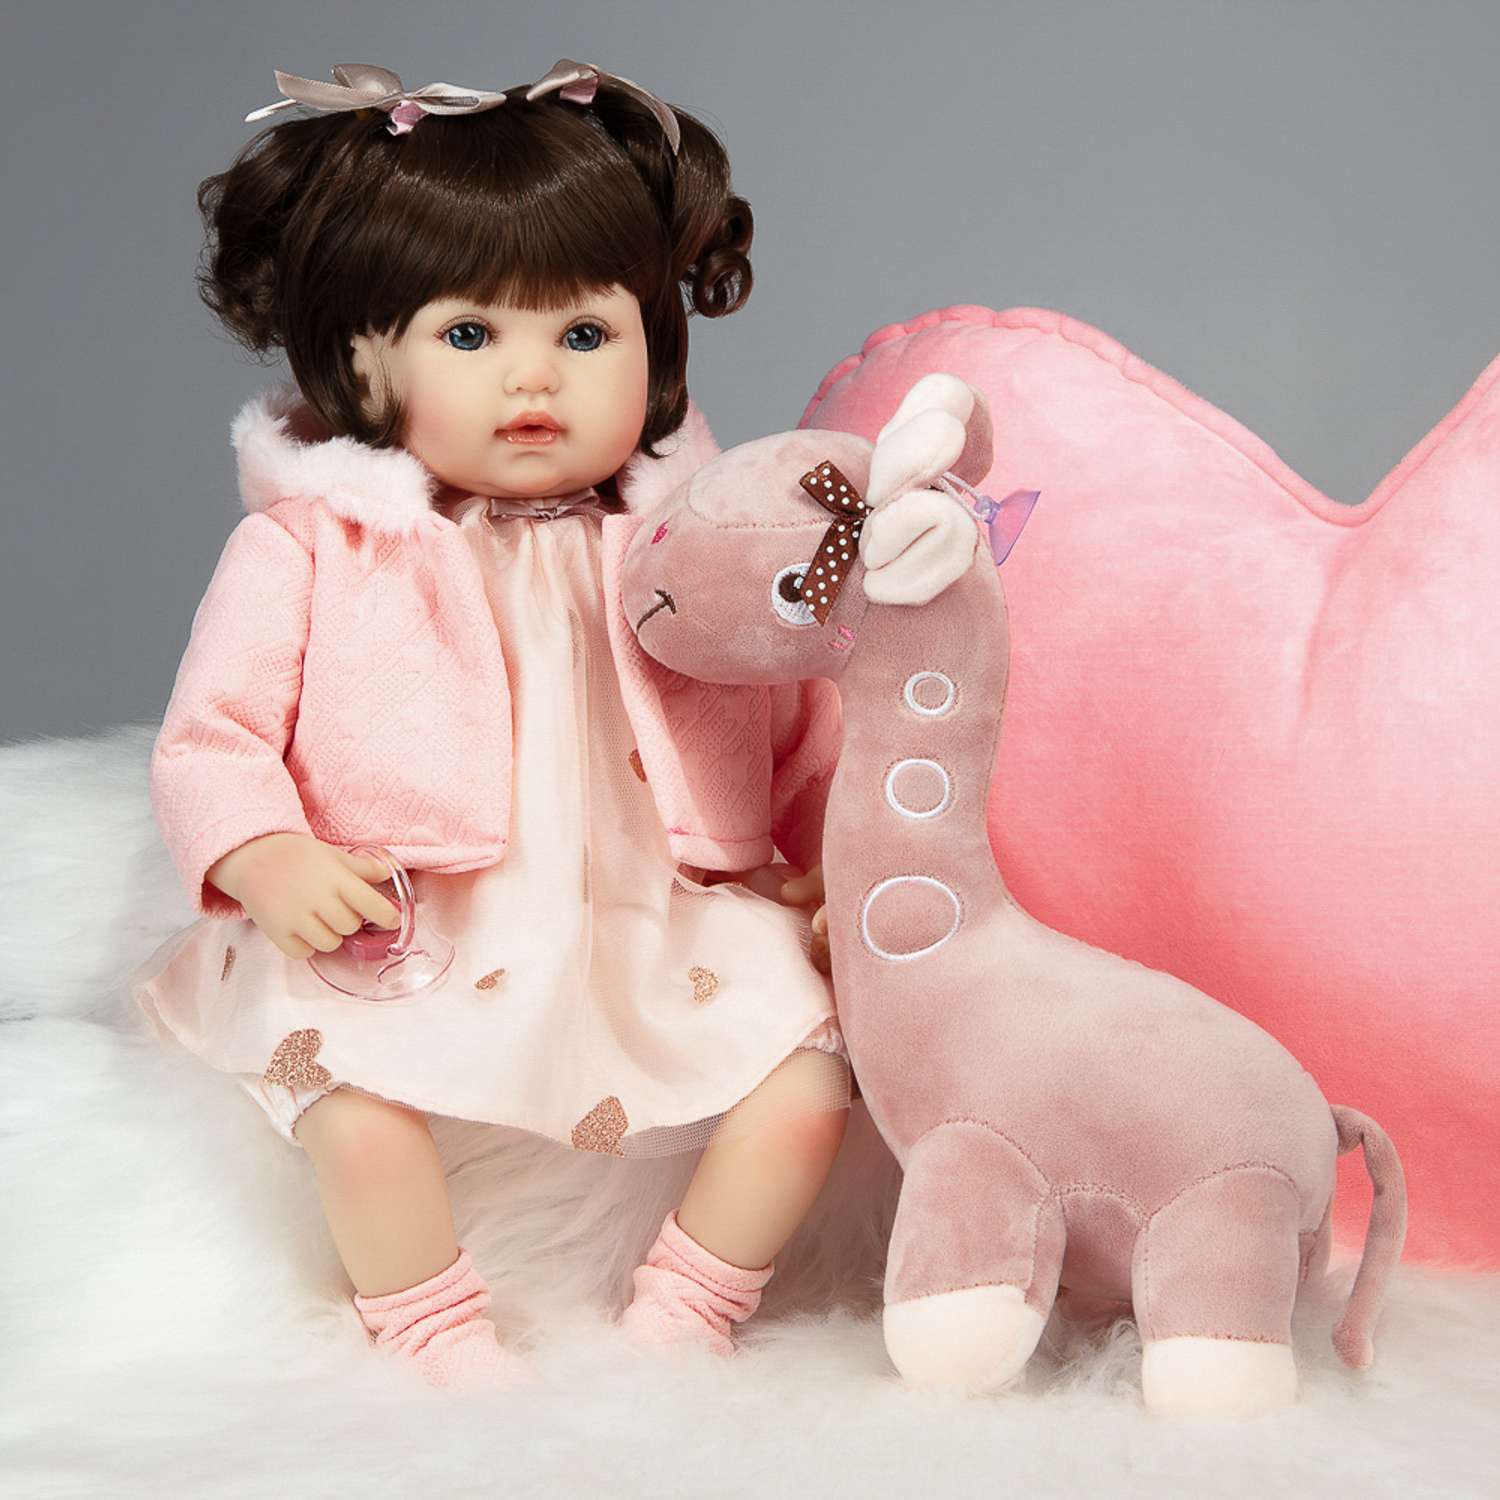 Кукла Реборн QA BABY Ирина девочка большая пупс набор игрушки для девочки 42 см 45007 - фото 9